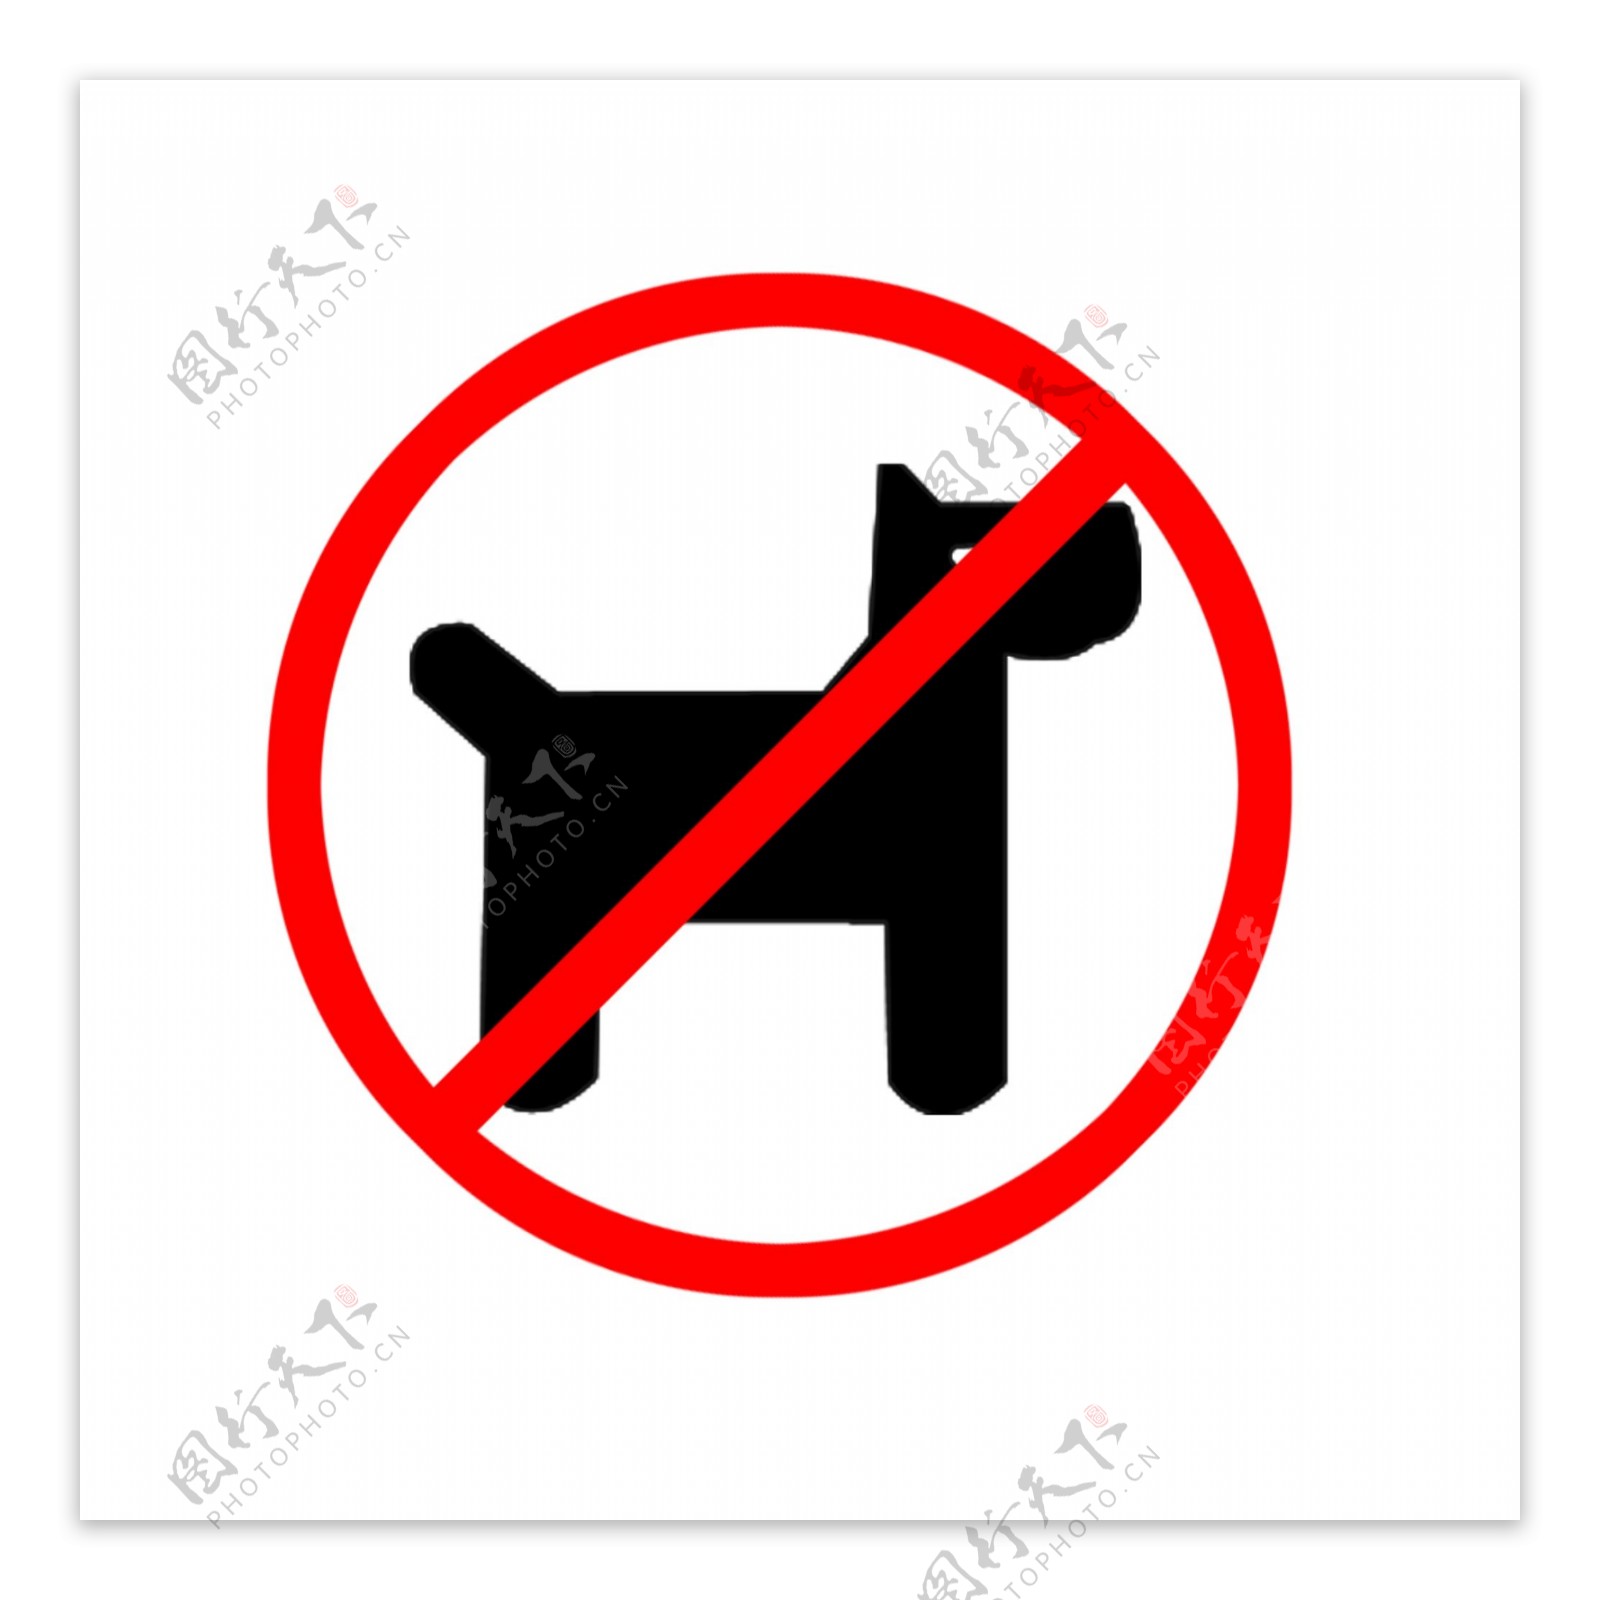 禁止携带宠物入内标识图片